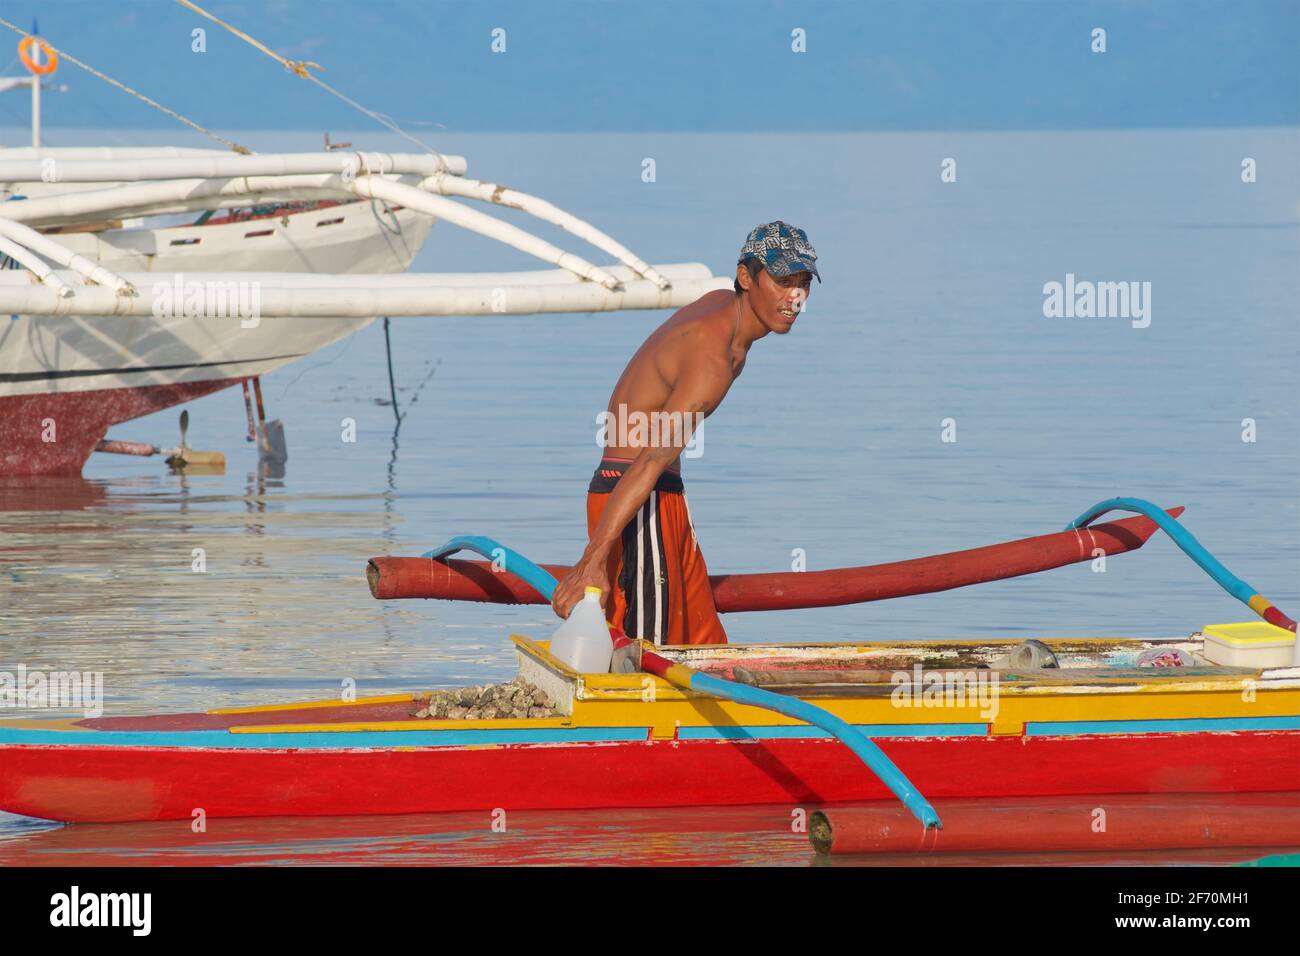 Le pêcheur philippin se prépare à prendre son canot en saillie pour pêcher dans la mer de Visayan au large de Moalboal, île de Cebu, Philippines. Banque D'Images